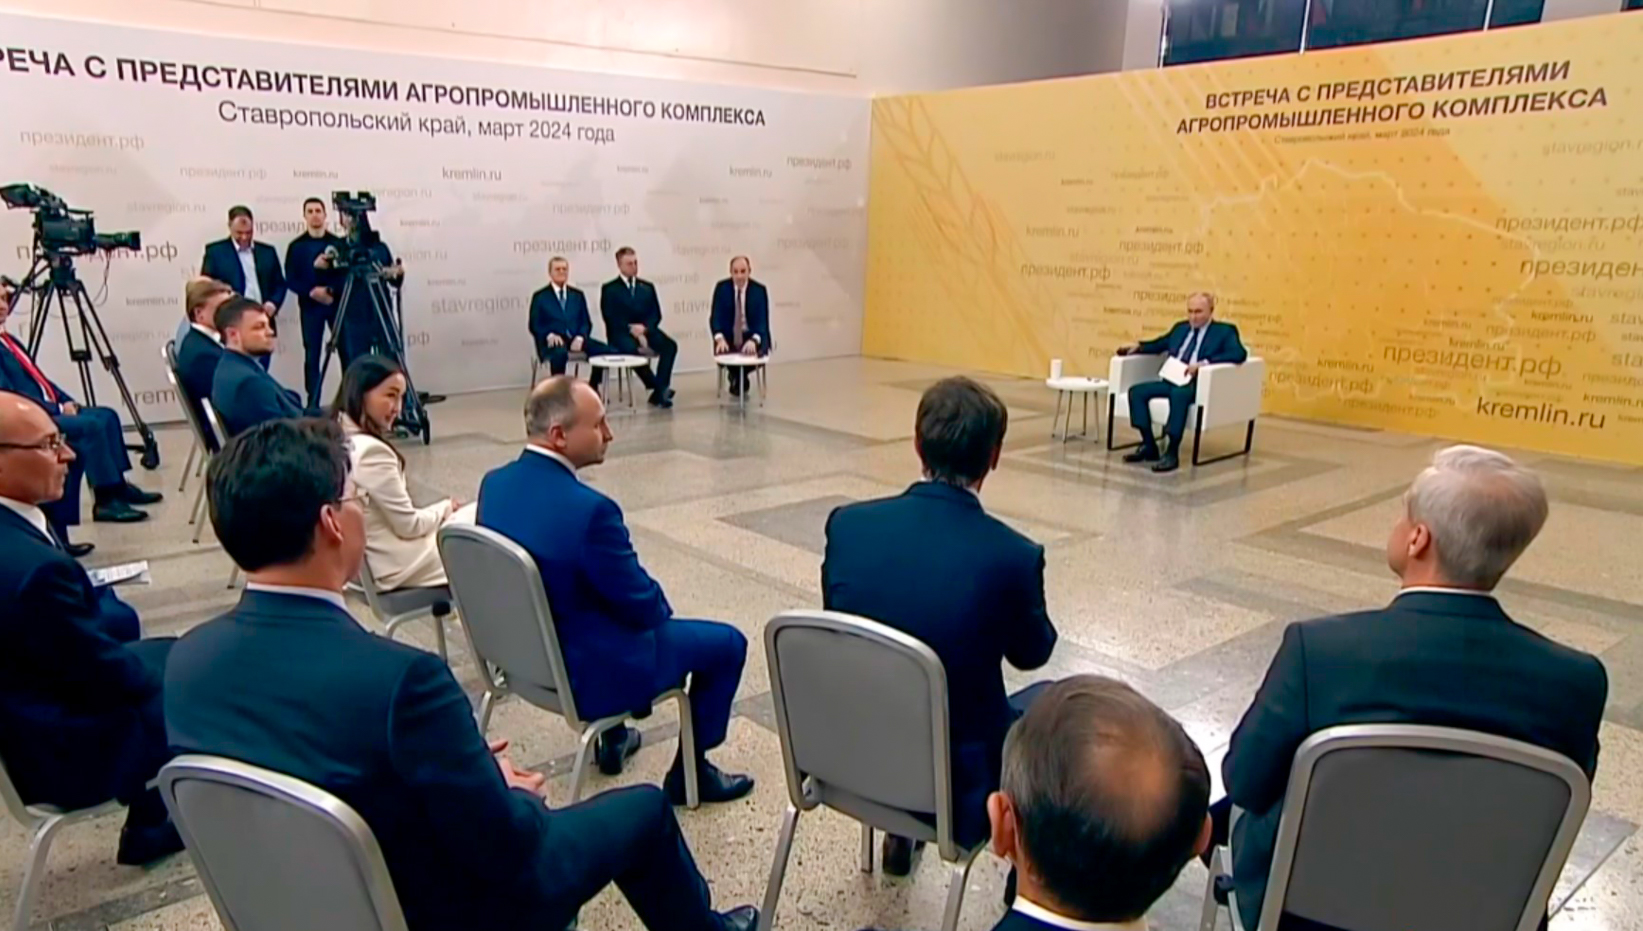 Владимир Путин проведет следующее совещание с аграриями в Павловске Воронежской области